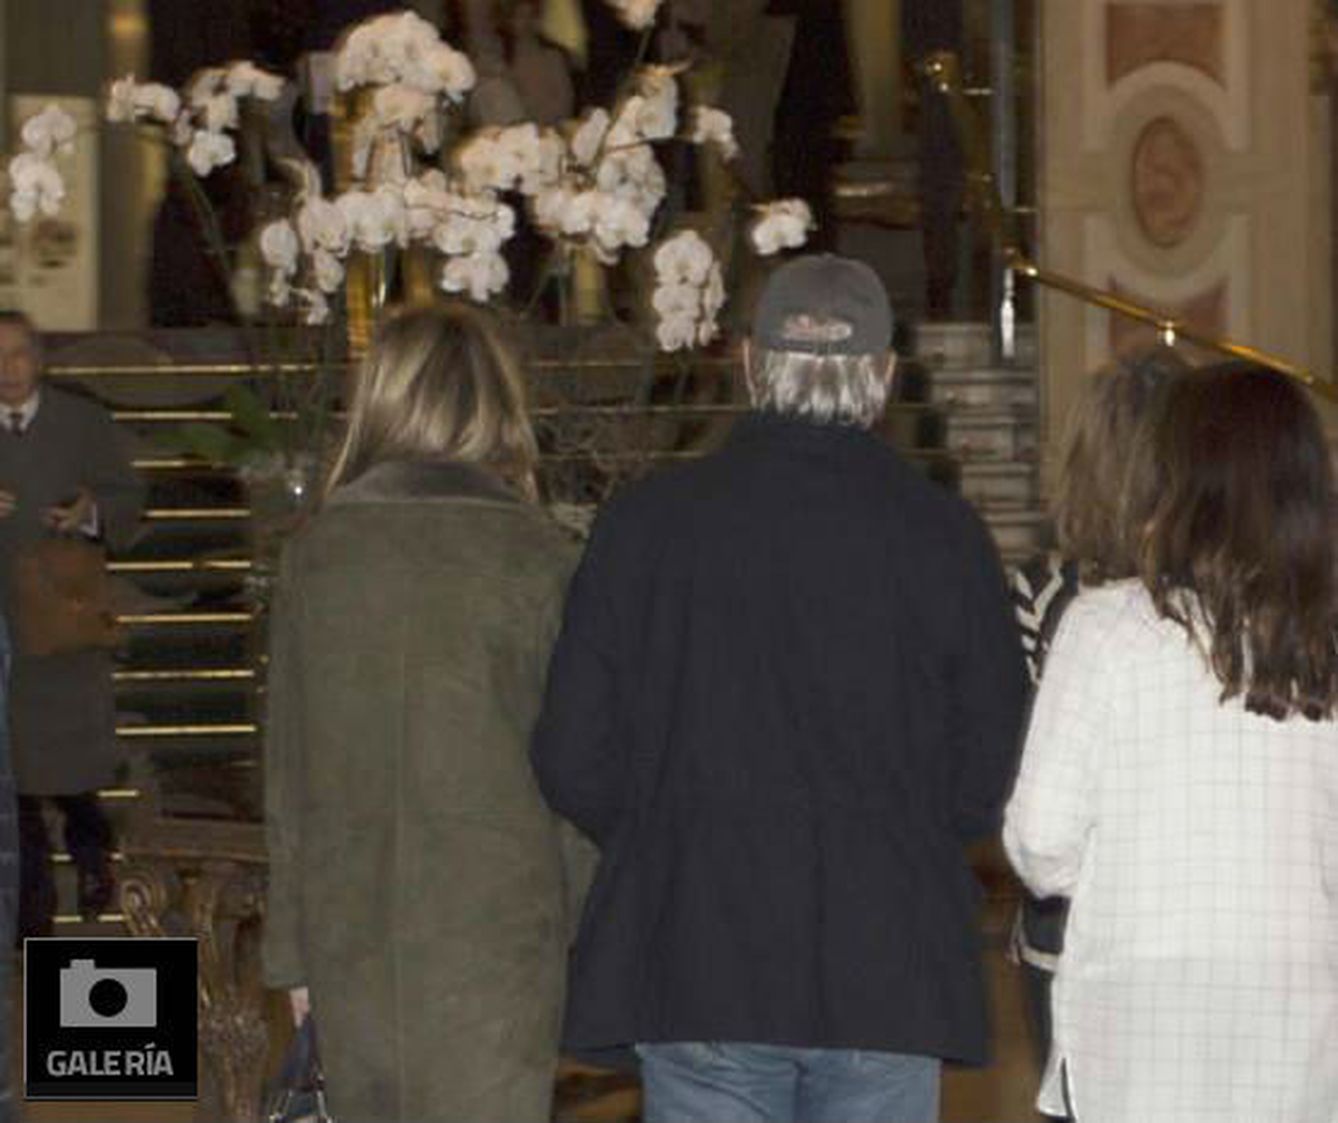 La pareja trataba de pasar desapercibida en Madrid (Galería)